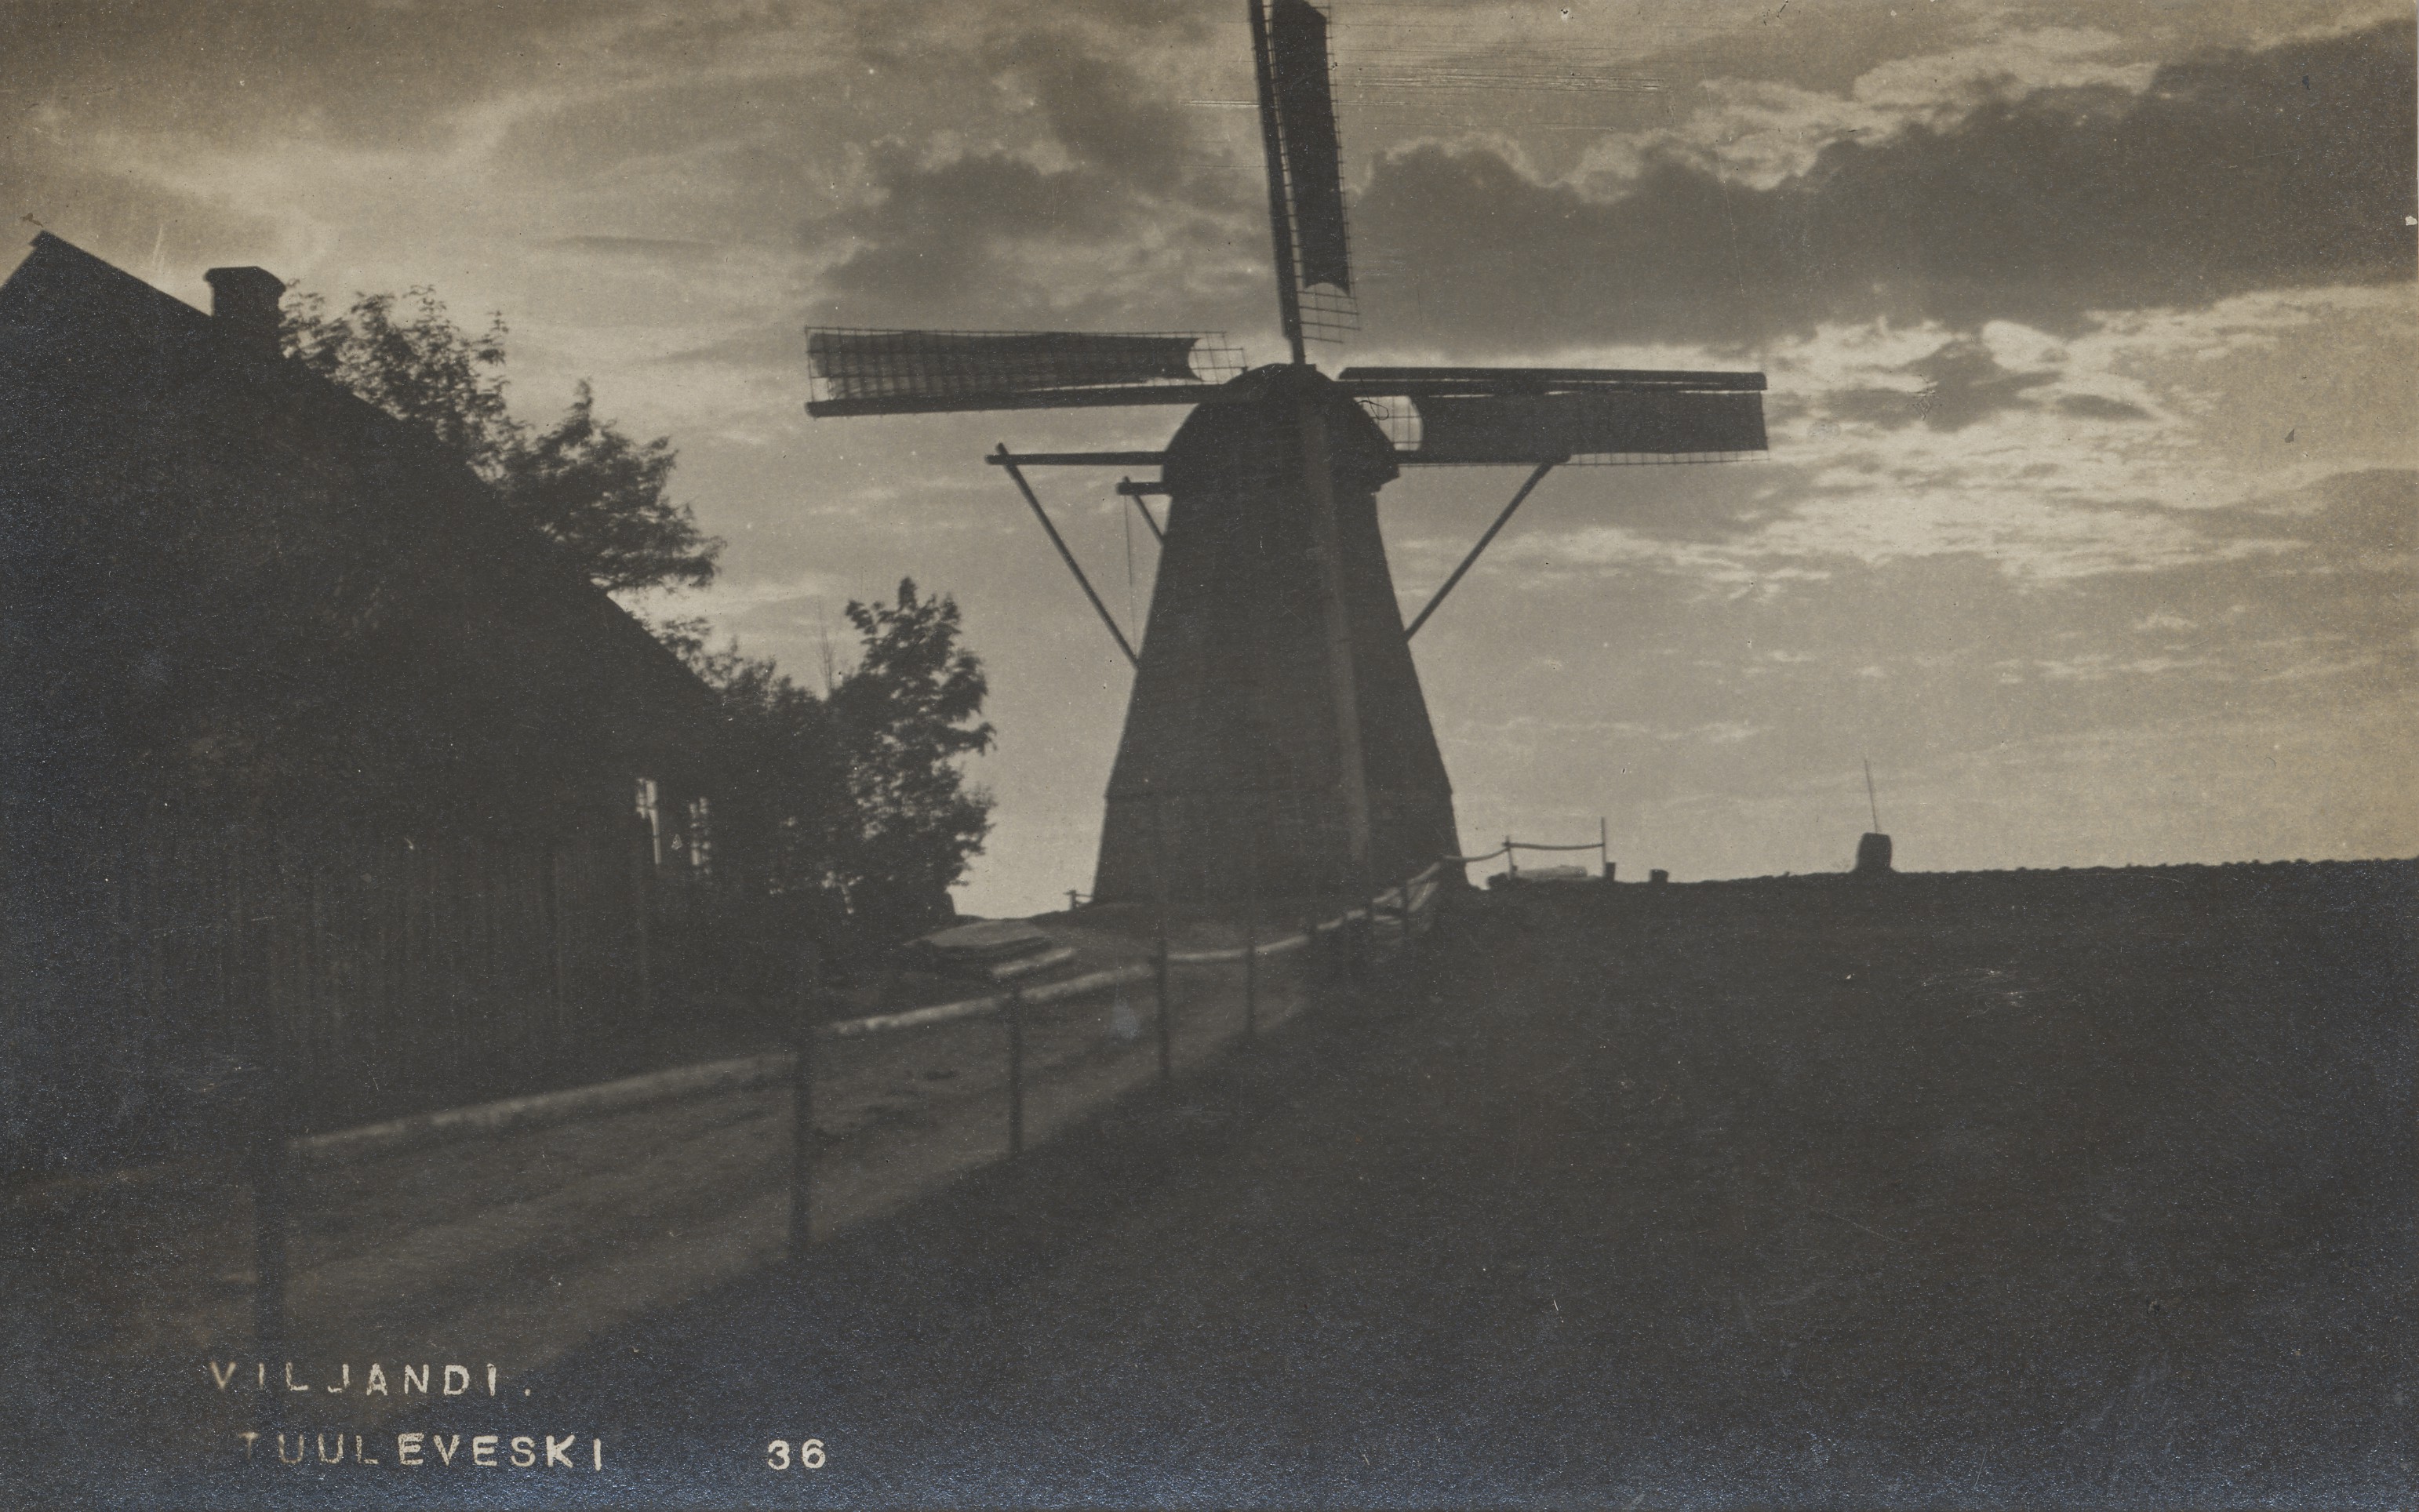 Viljandi windmill